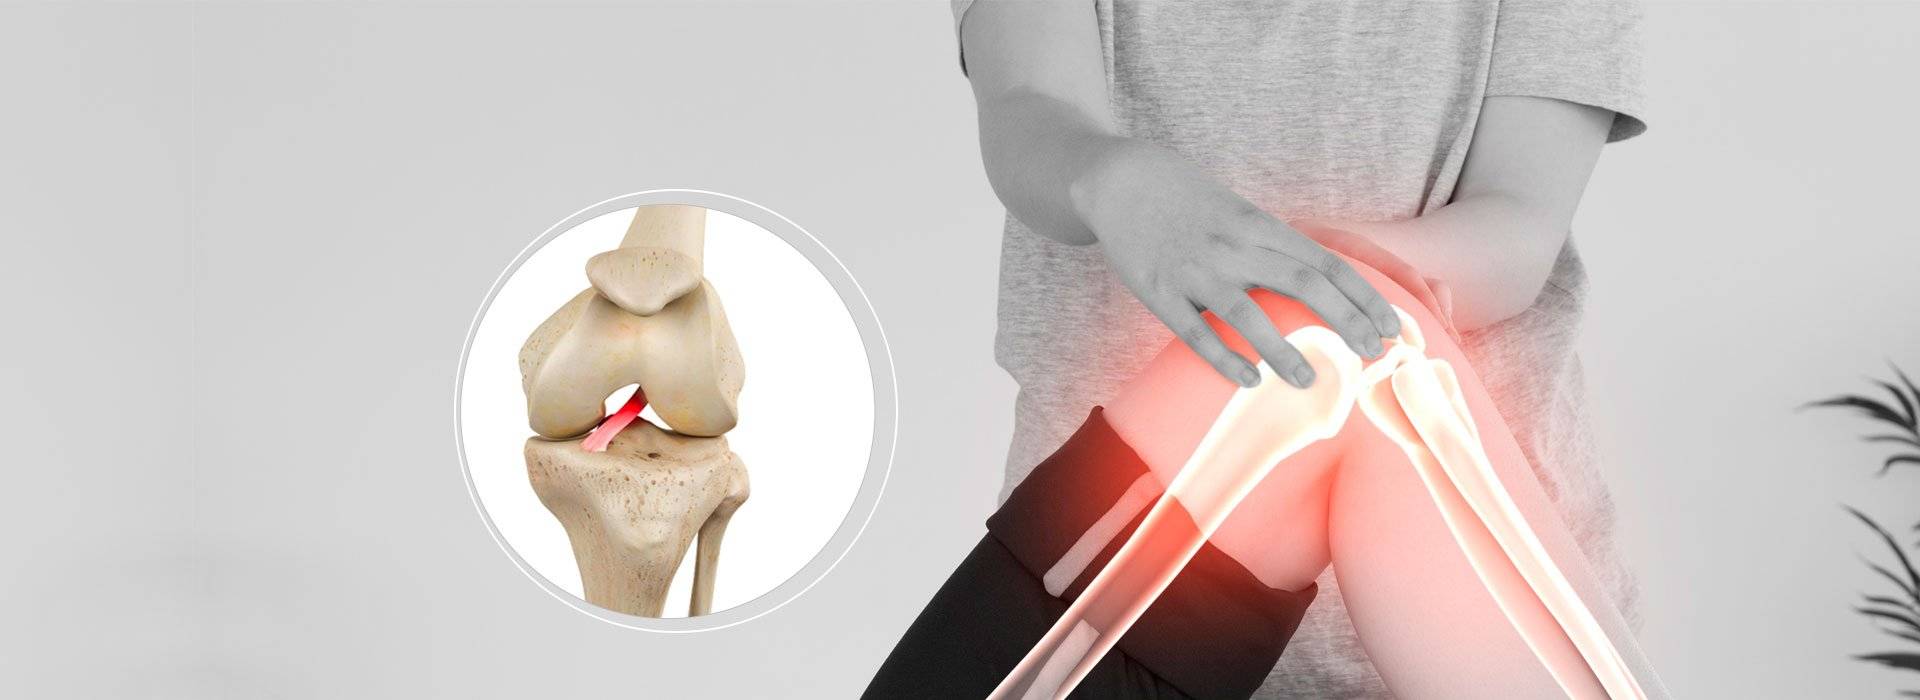 lesões nso ligamentos do joelho tratamentos